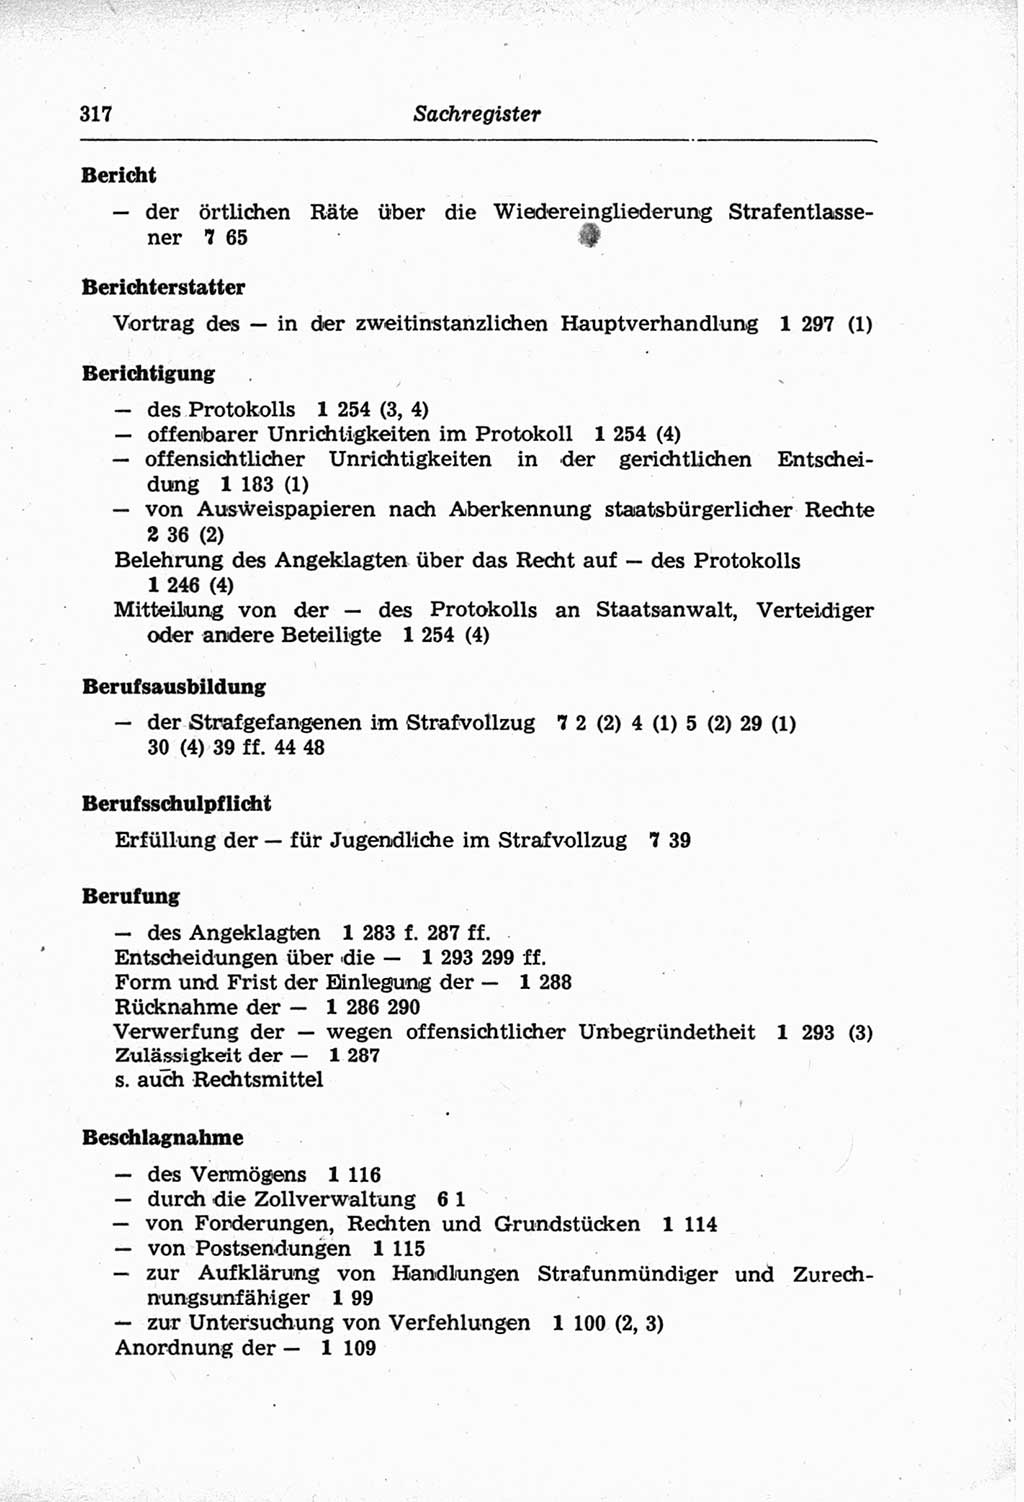 Strafprozeßordnung (StPO) der Deutschen Demokratischen Republik (DDR) und angrenzende Gesetze und Bestimmungen 1968, Seite 317 (StPO Ges. Bstgn. DDR 1968, S. 317)